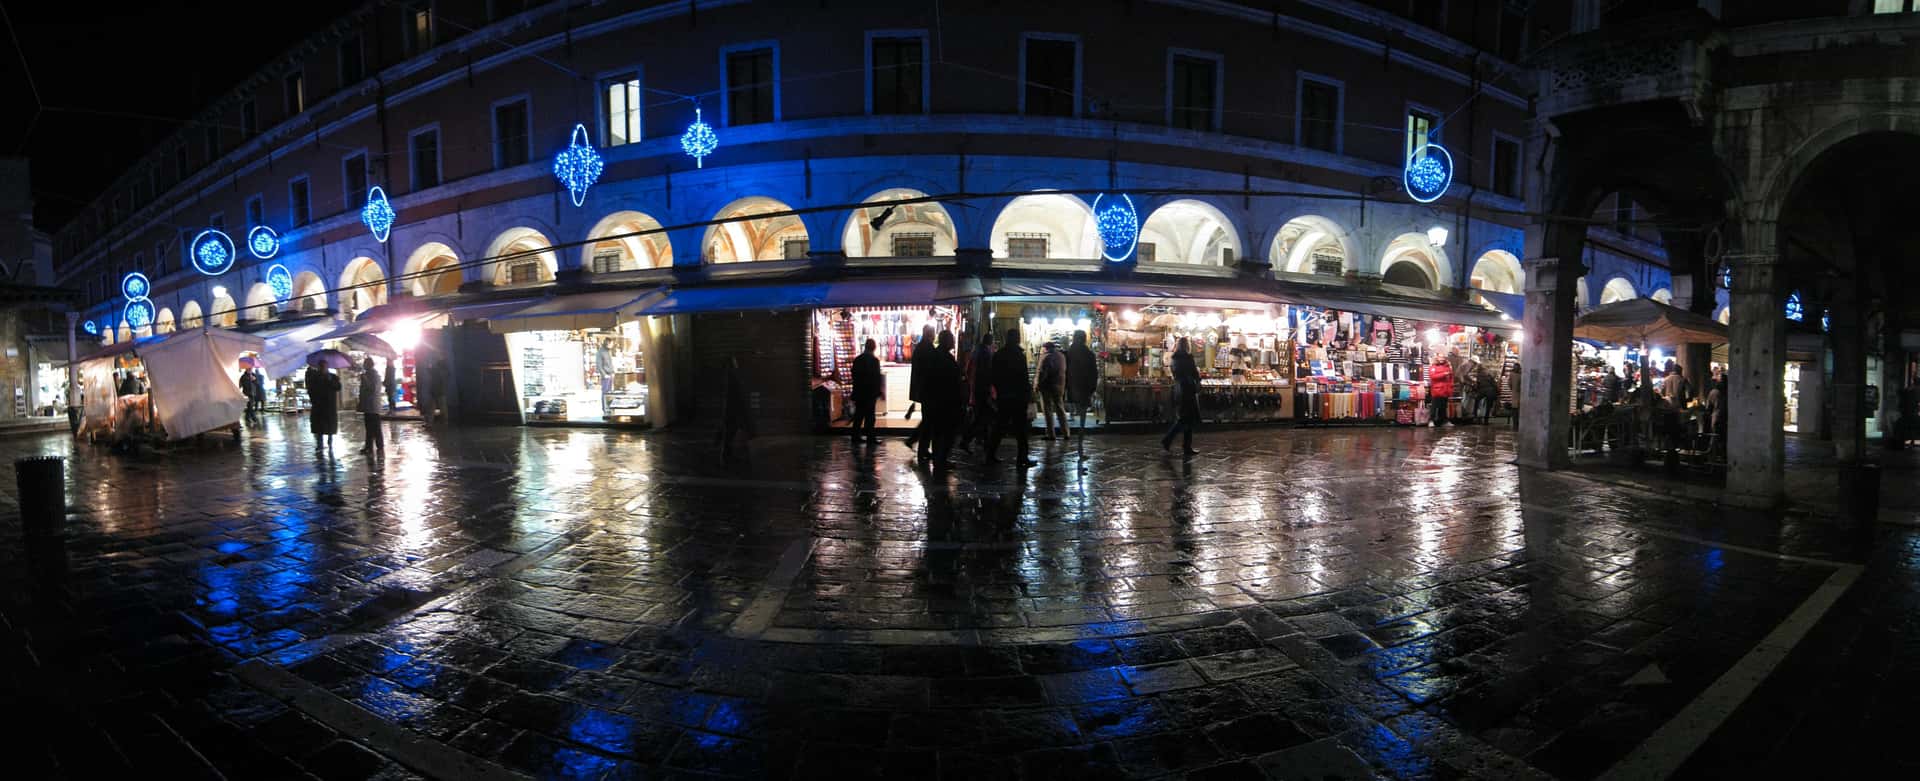 Campo San Giacomo di Rialto reflecting Christmas lights in the rain